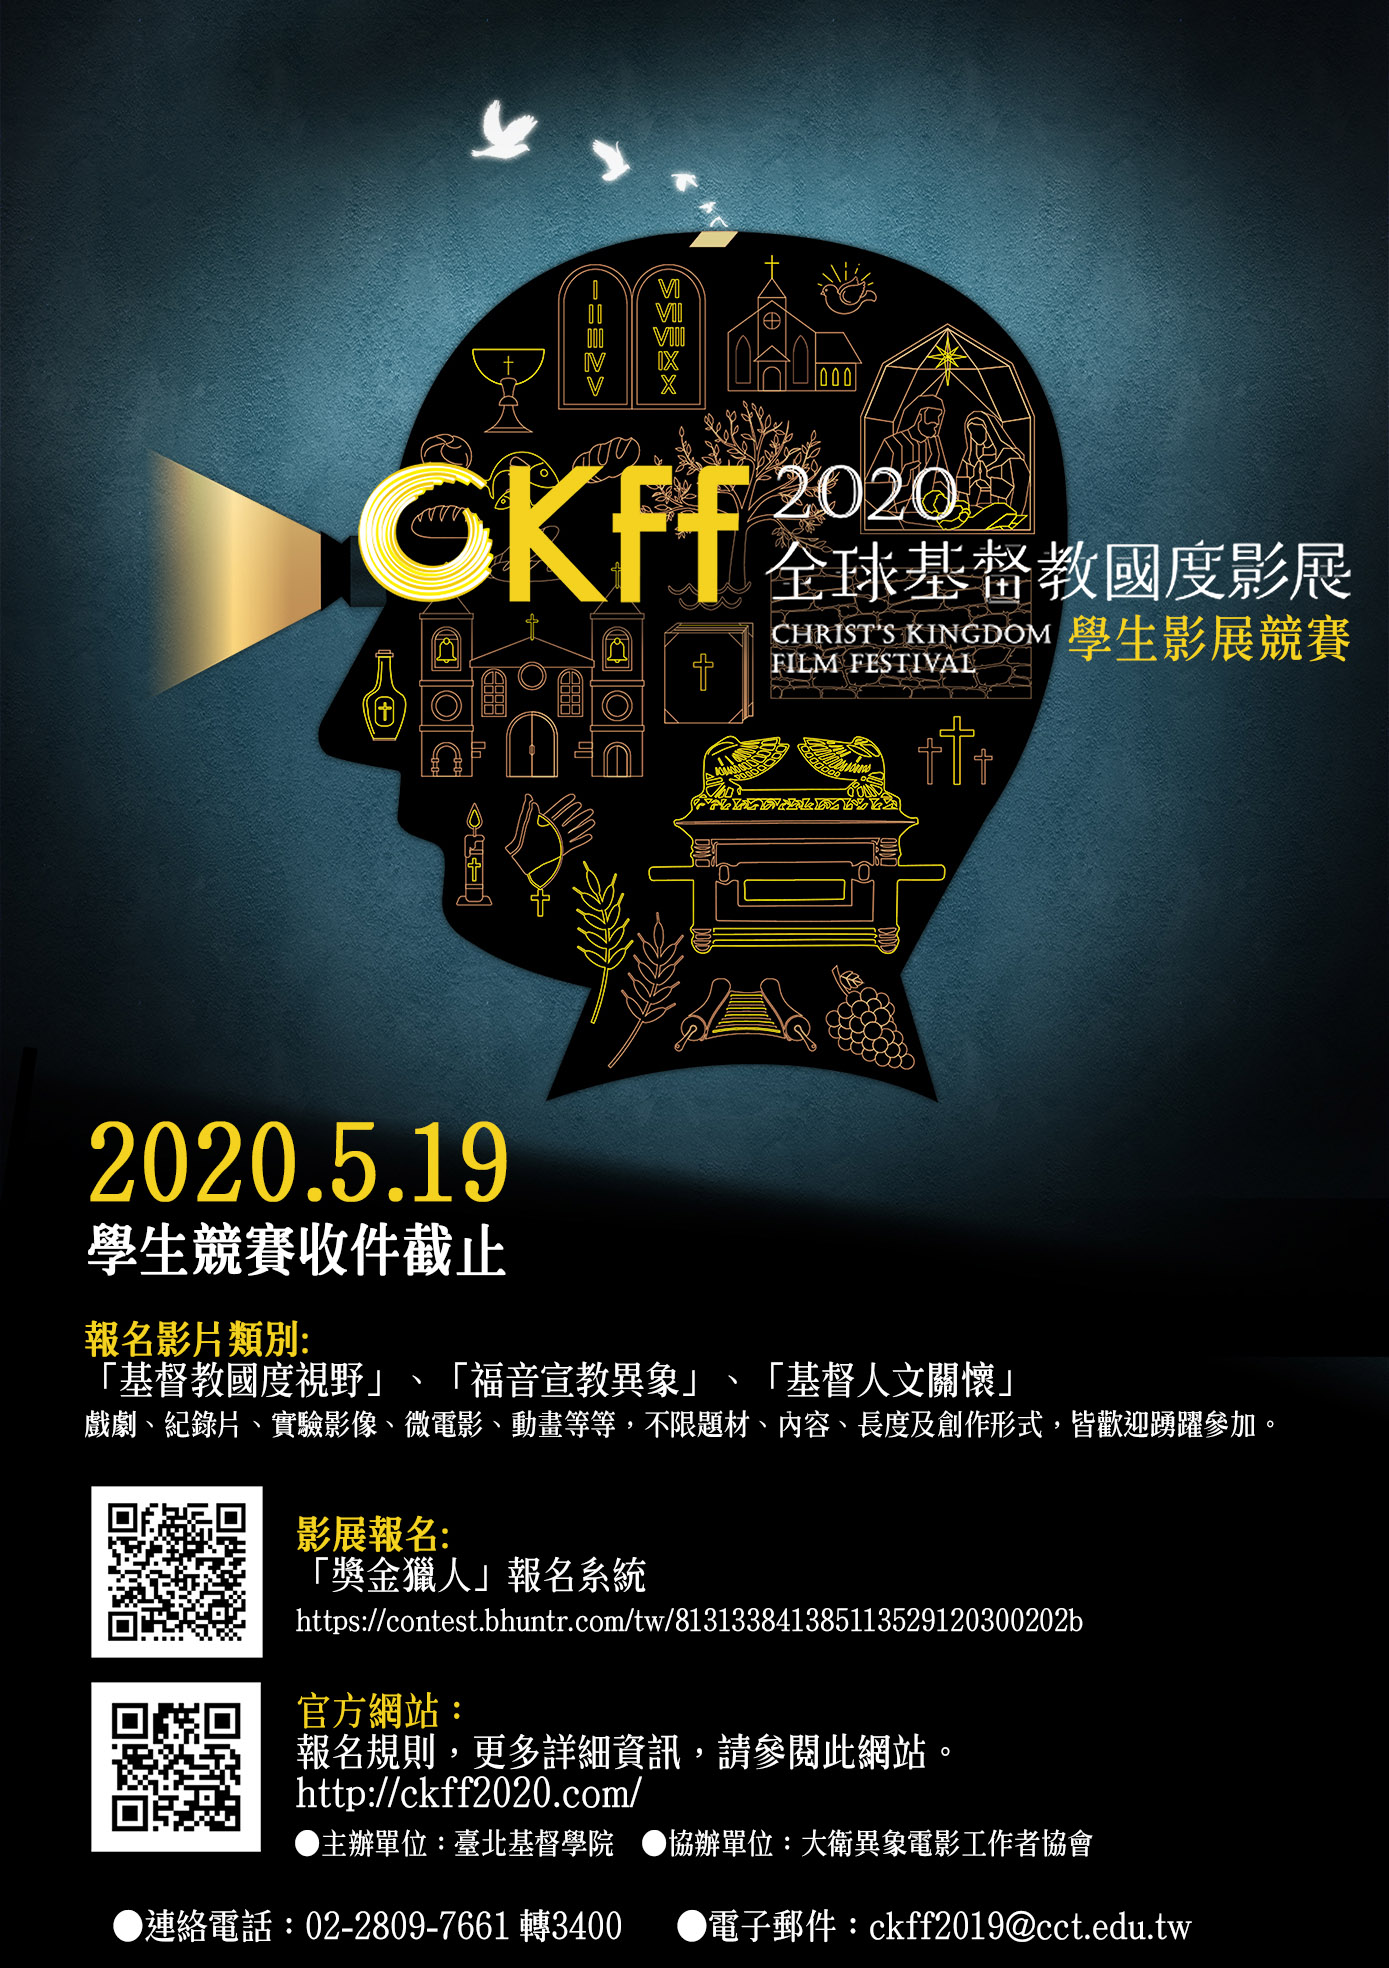 CKFF 2020全球基督教國度影展．學生影展競賽 EDM